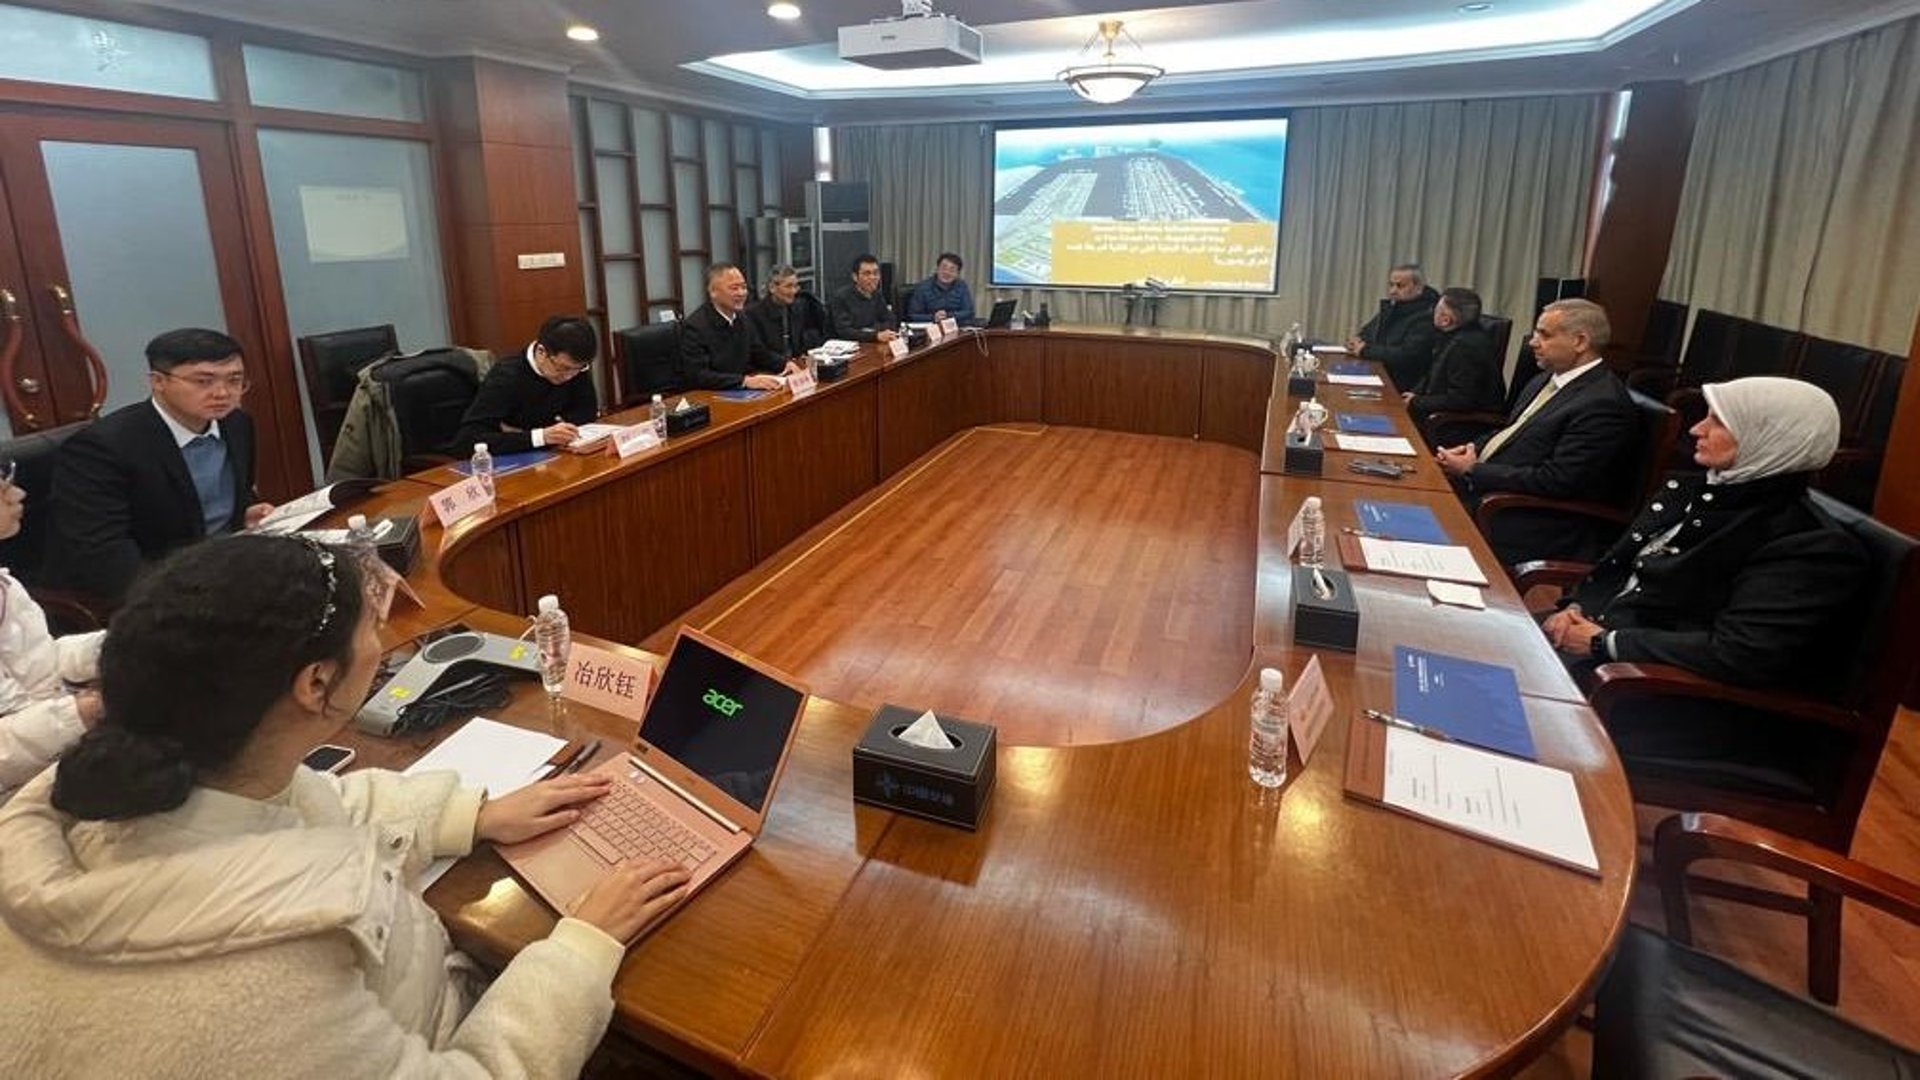 الفرطوسي في شنغهاي: الصين تقدم عرضاً لتوسعة ميناء الفاو وقدمت تفاصيل التصميم